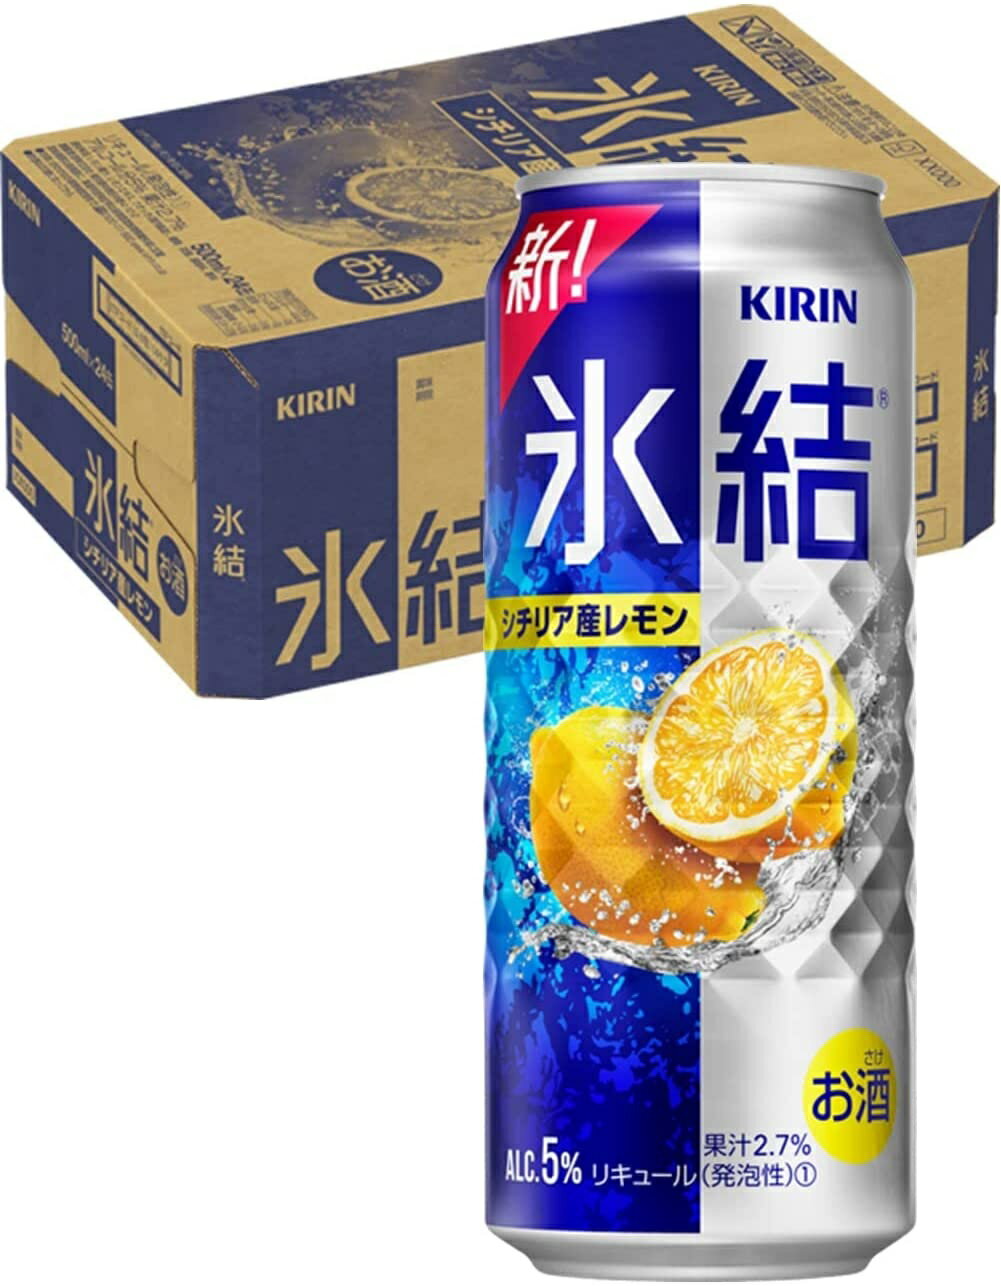 【あす楽】キリン 氷結 レモン 500ml×1ケース/24本 【ご注文は2ケースまで同梱可能です】